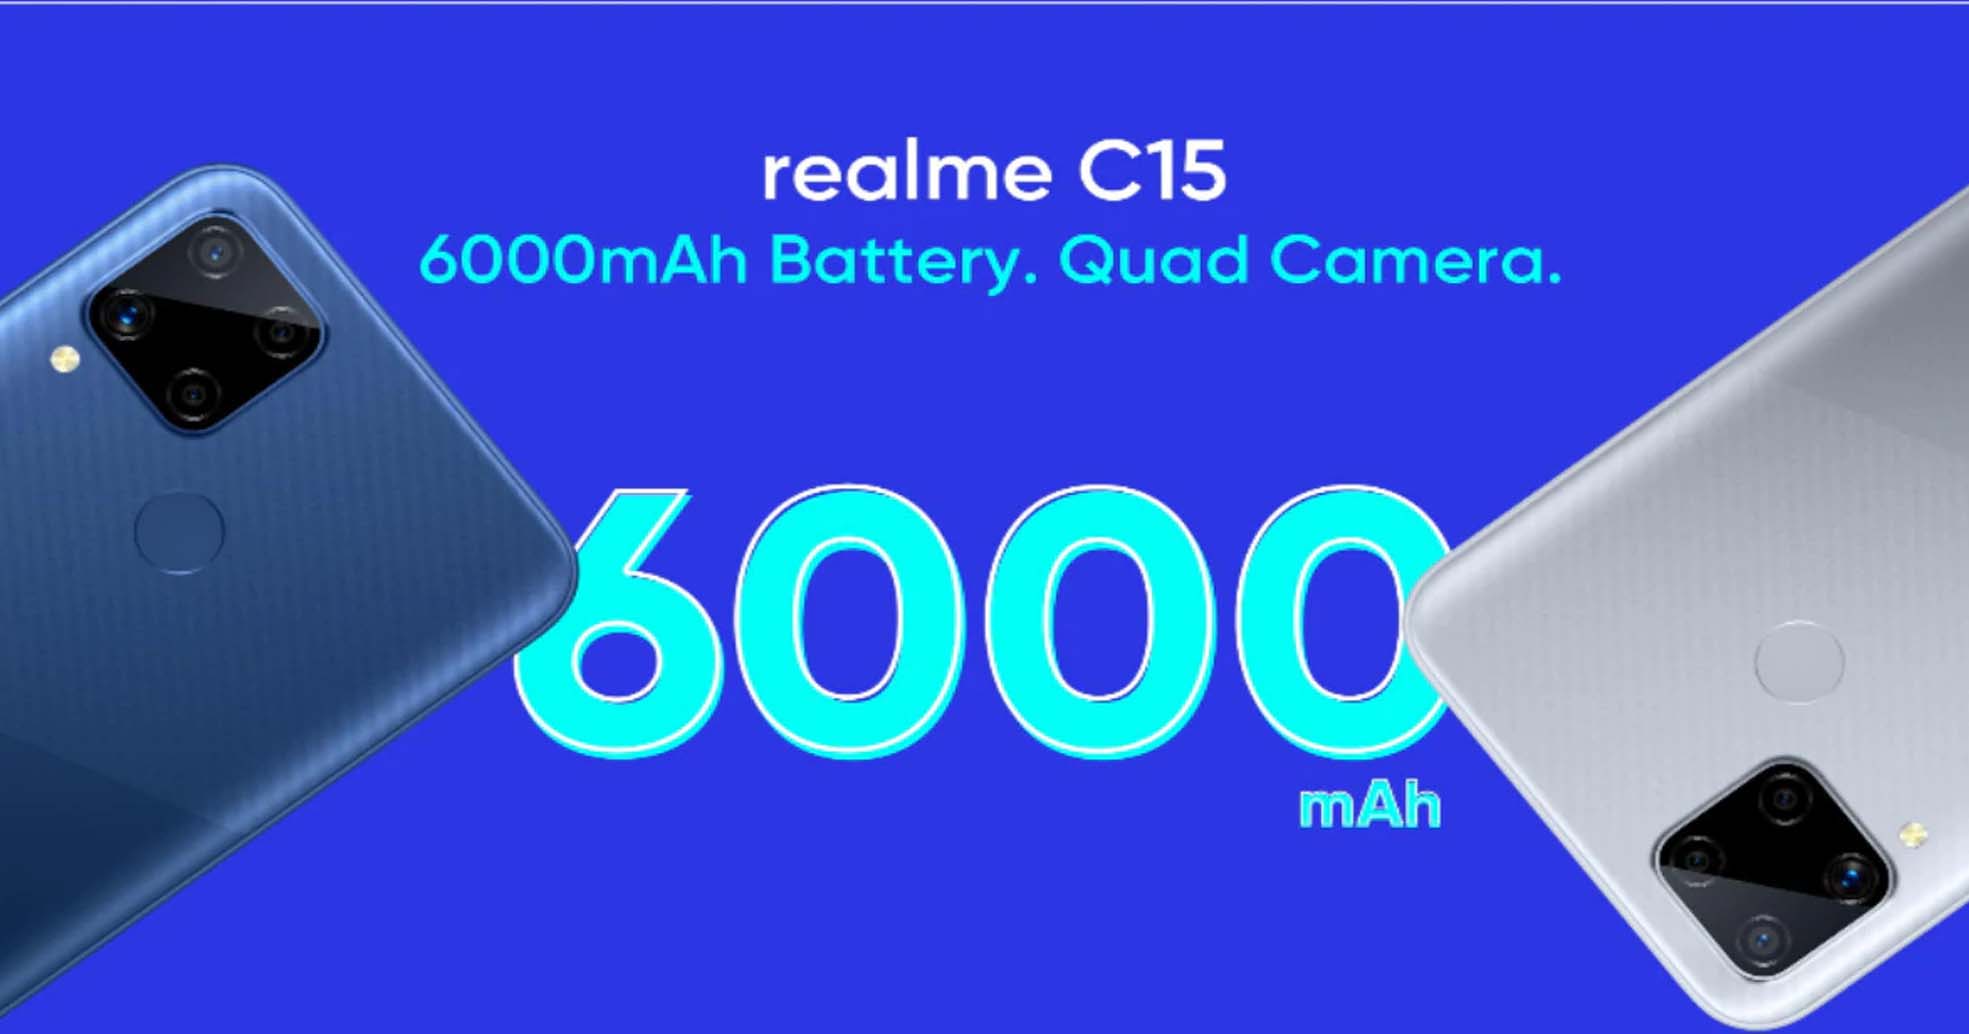 सस्ता हुआ Realme का 6000mAh बैटरी वाला बजट स्मार्टफोन C15